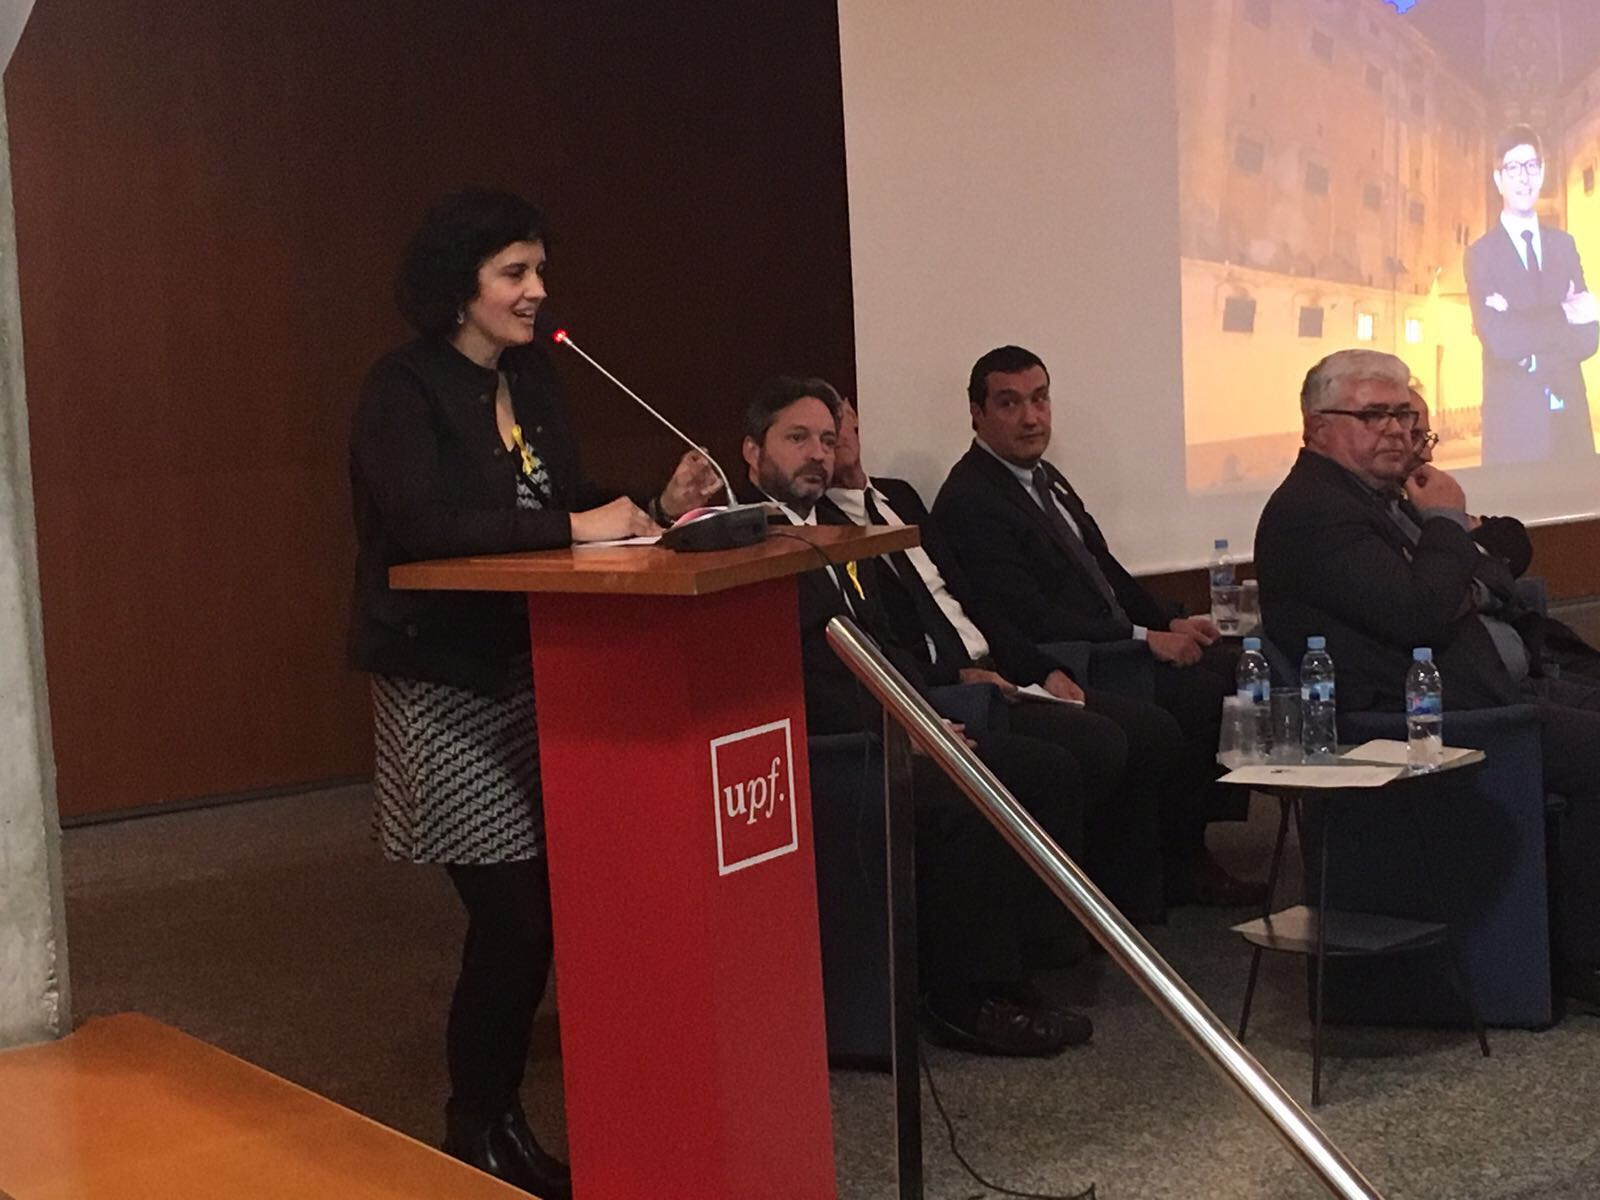 AnnaMarta Roca en el moment d'intervenir a l'acte de la Universitat Pompeu Fabra